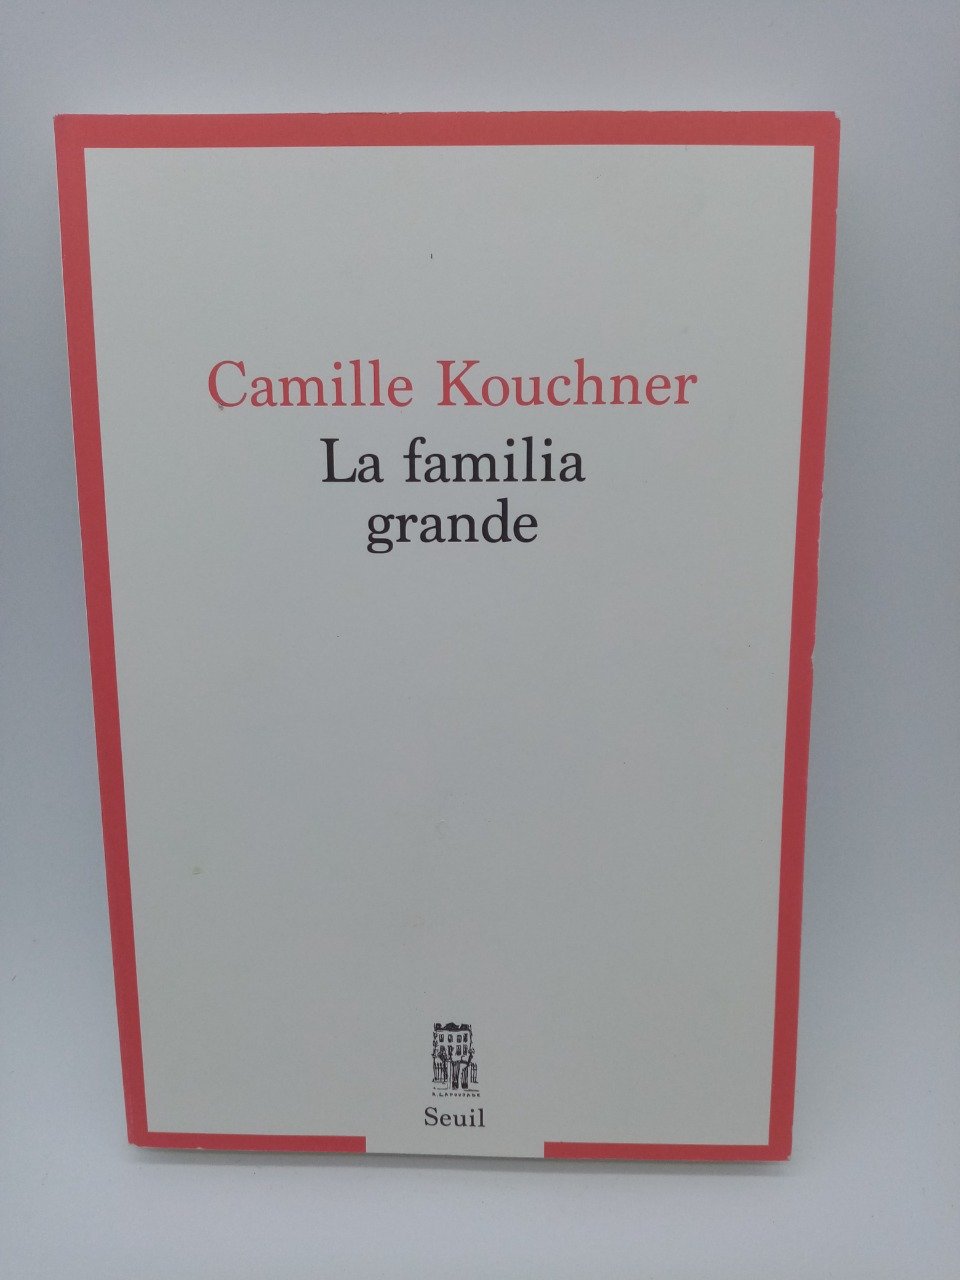 Camille KOUCHNER, La familia grande